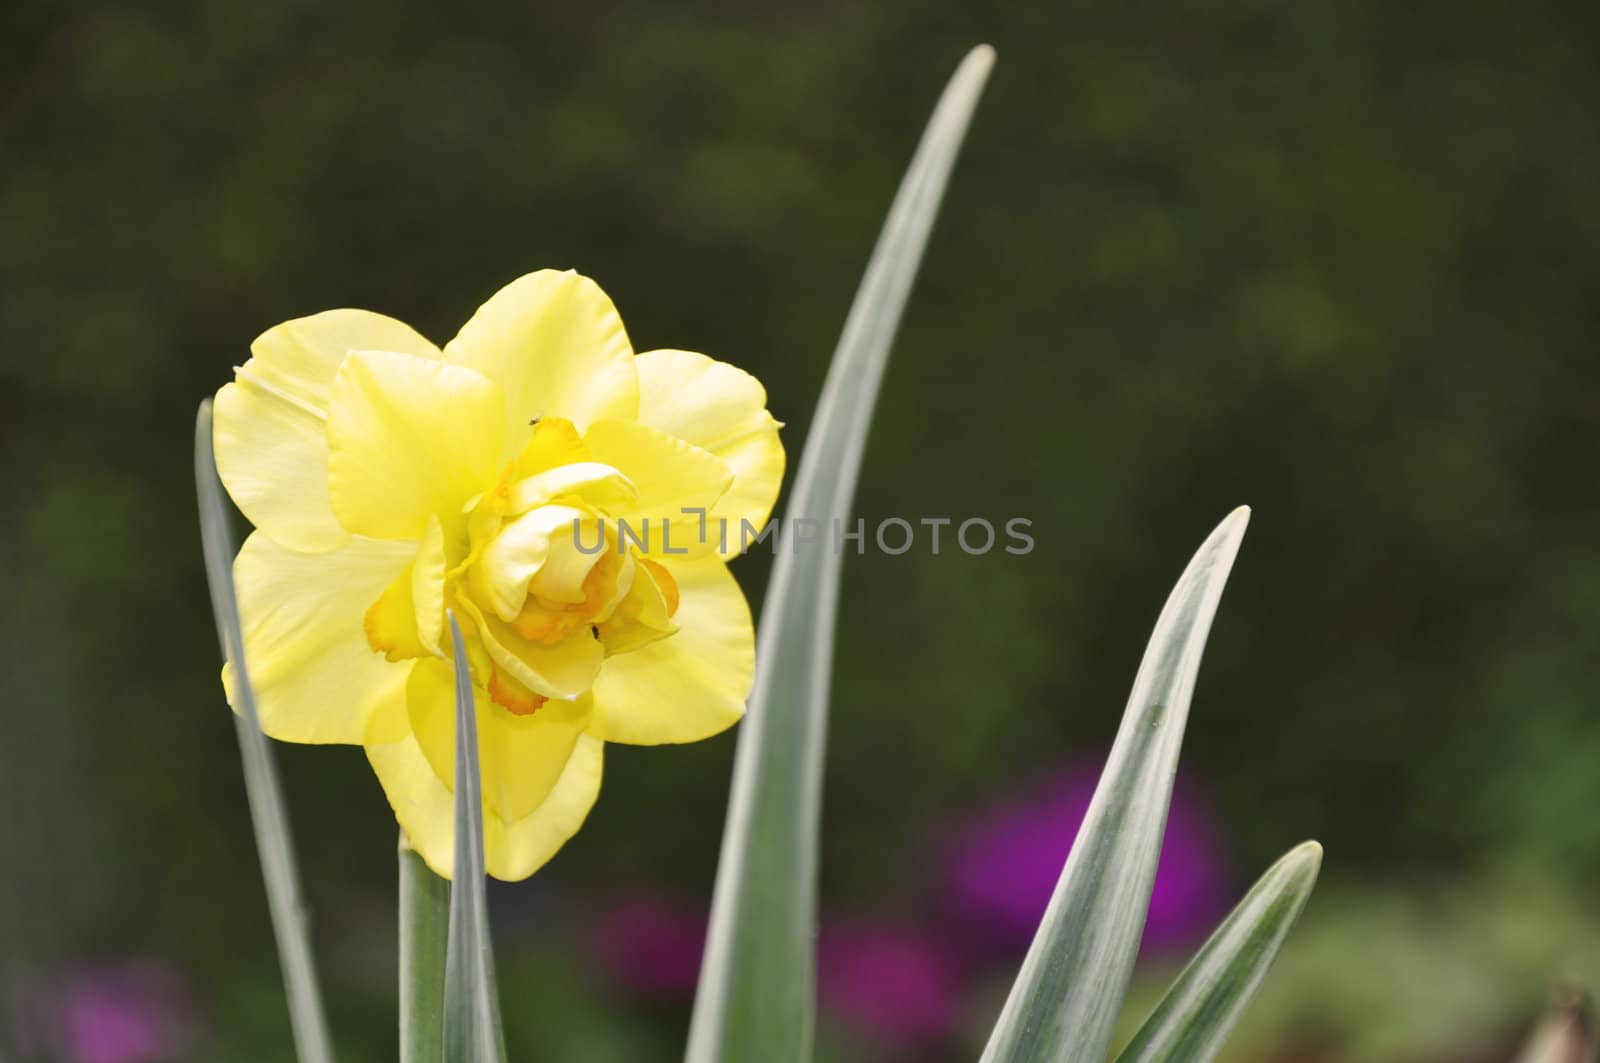 Daffodil by kdreams02